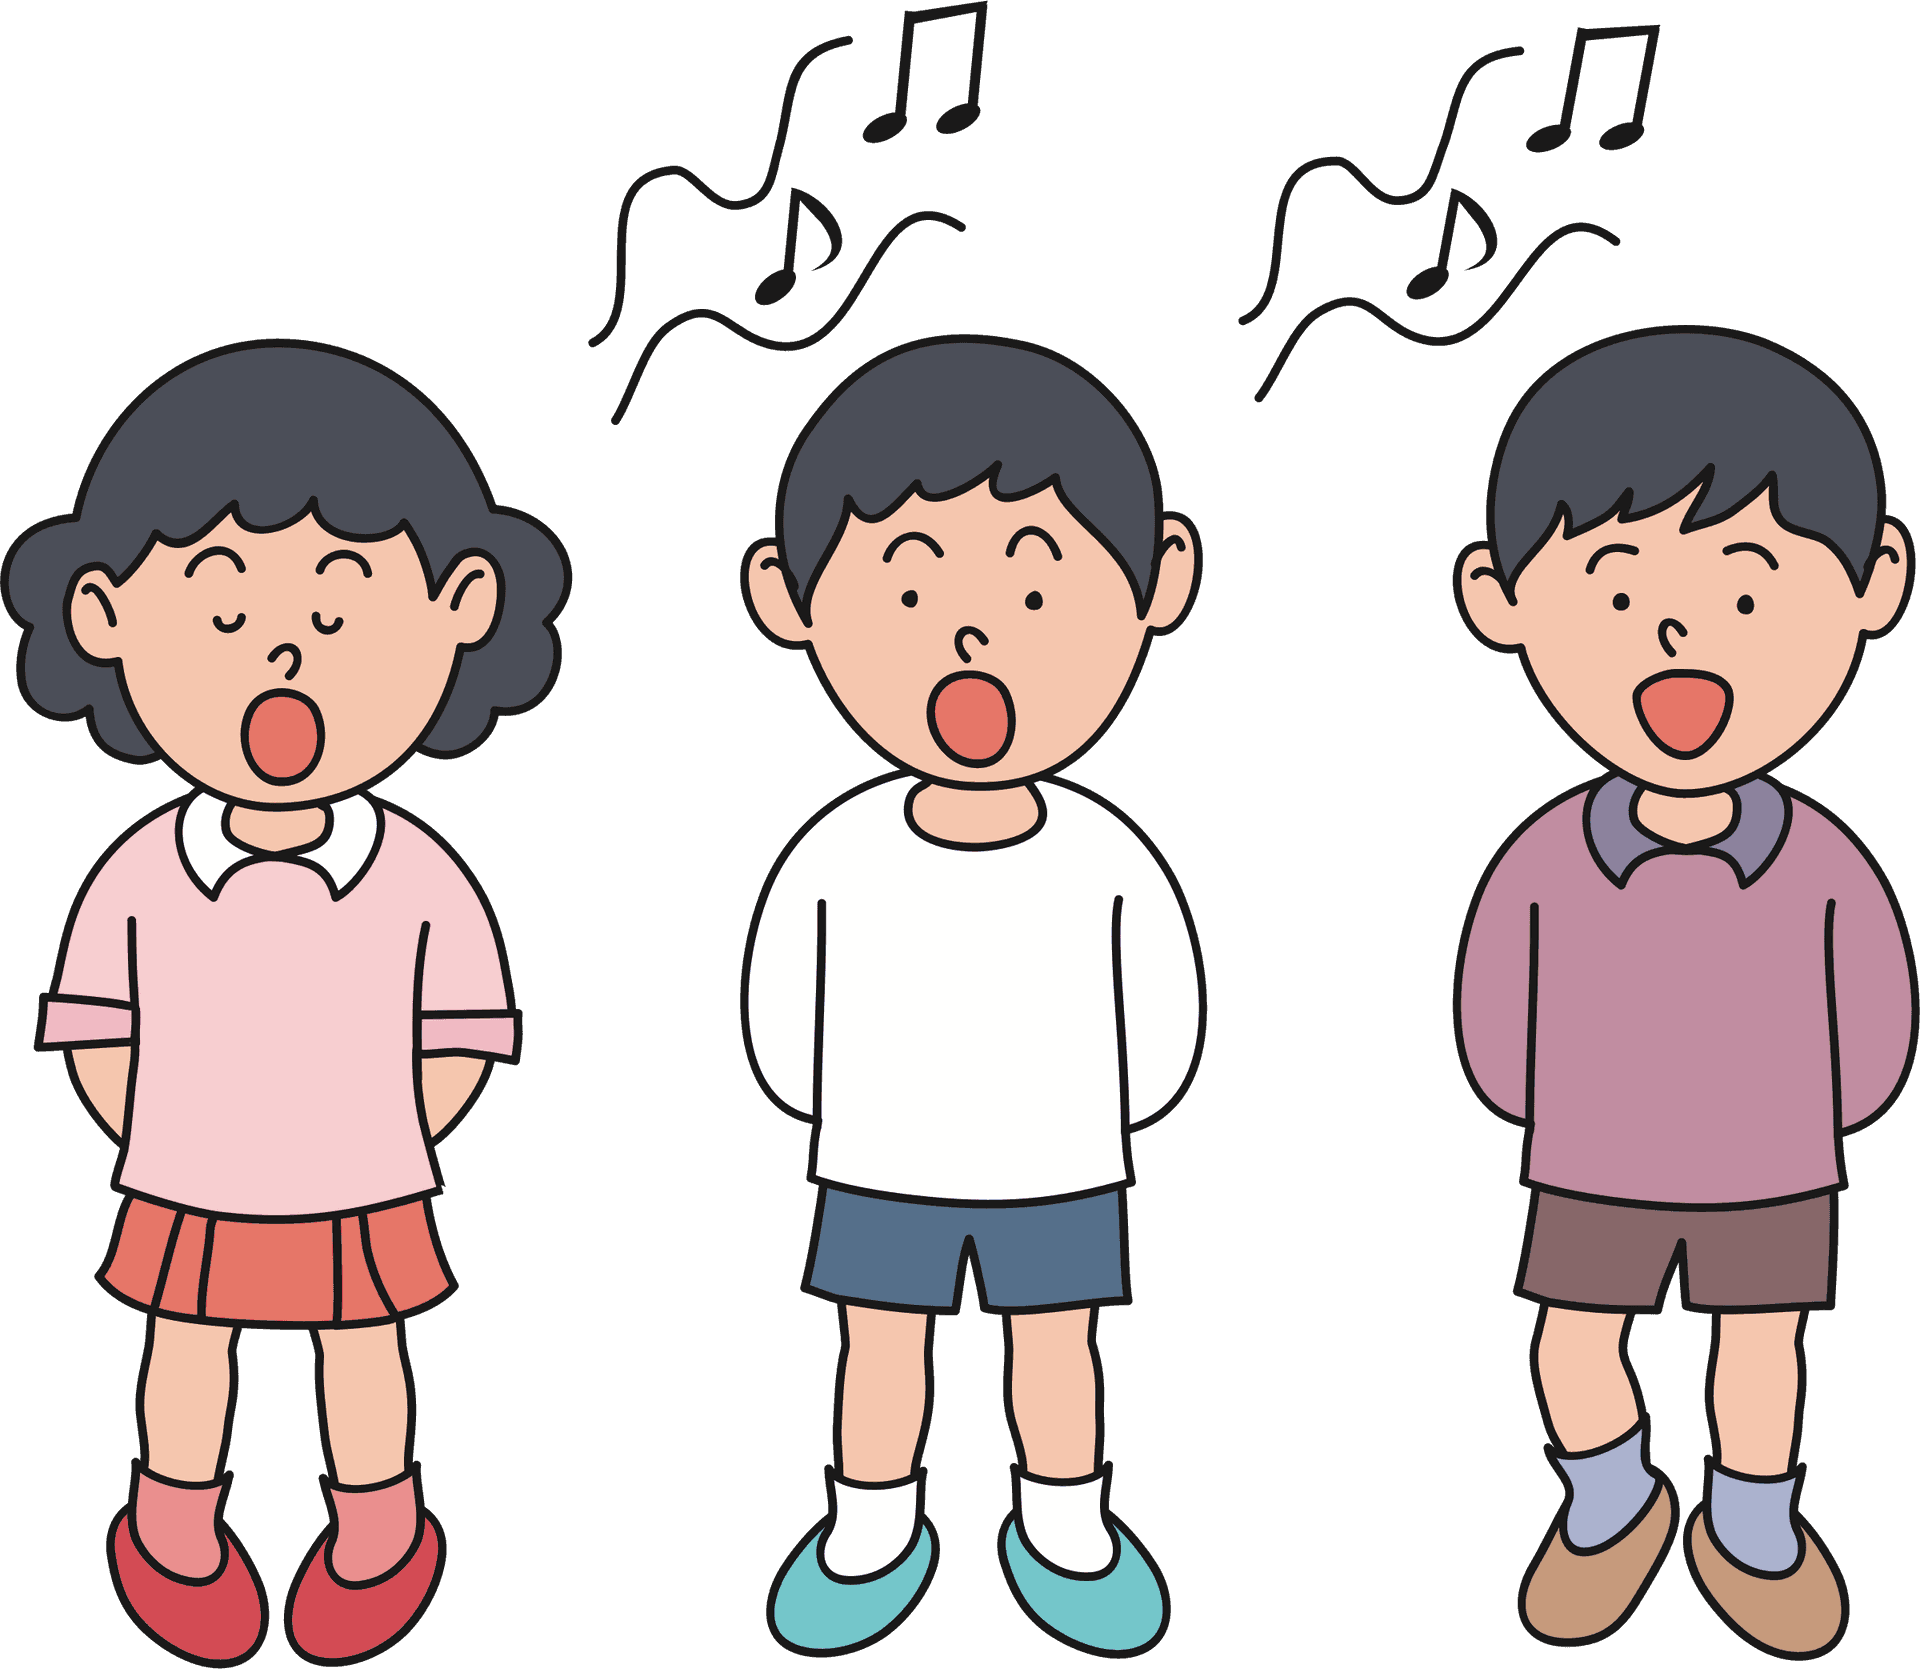 Children Singing Cartoon PNG image